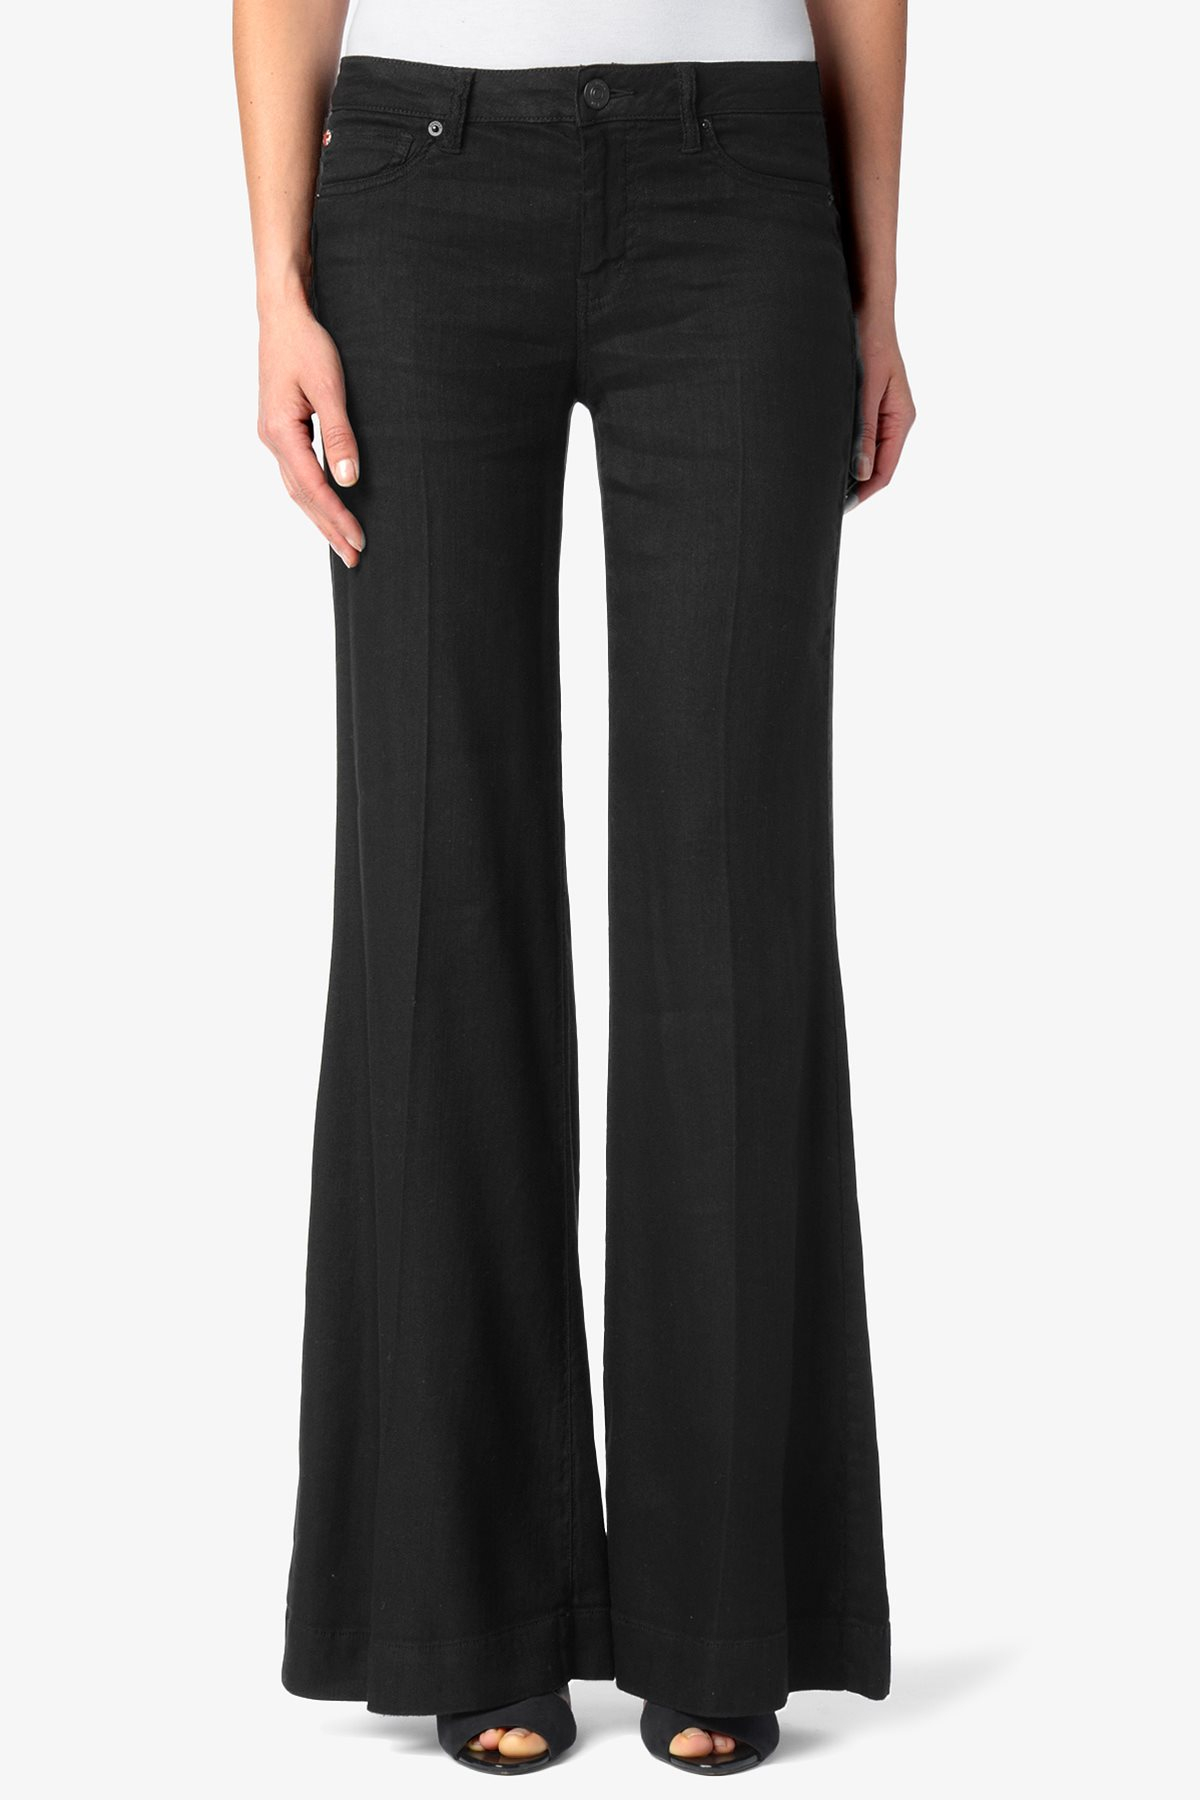 Lyst - Hudson Jeans Gwen Mid-rise Wide Leg in Black